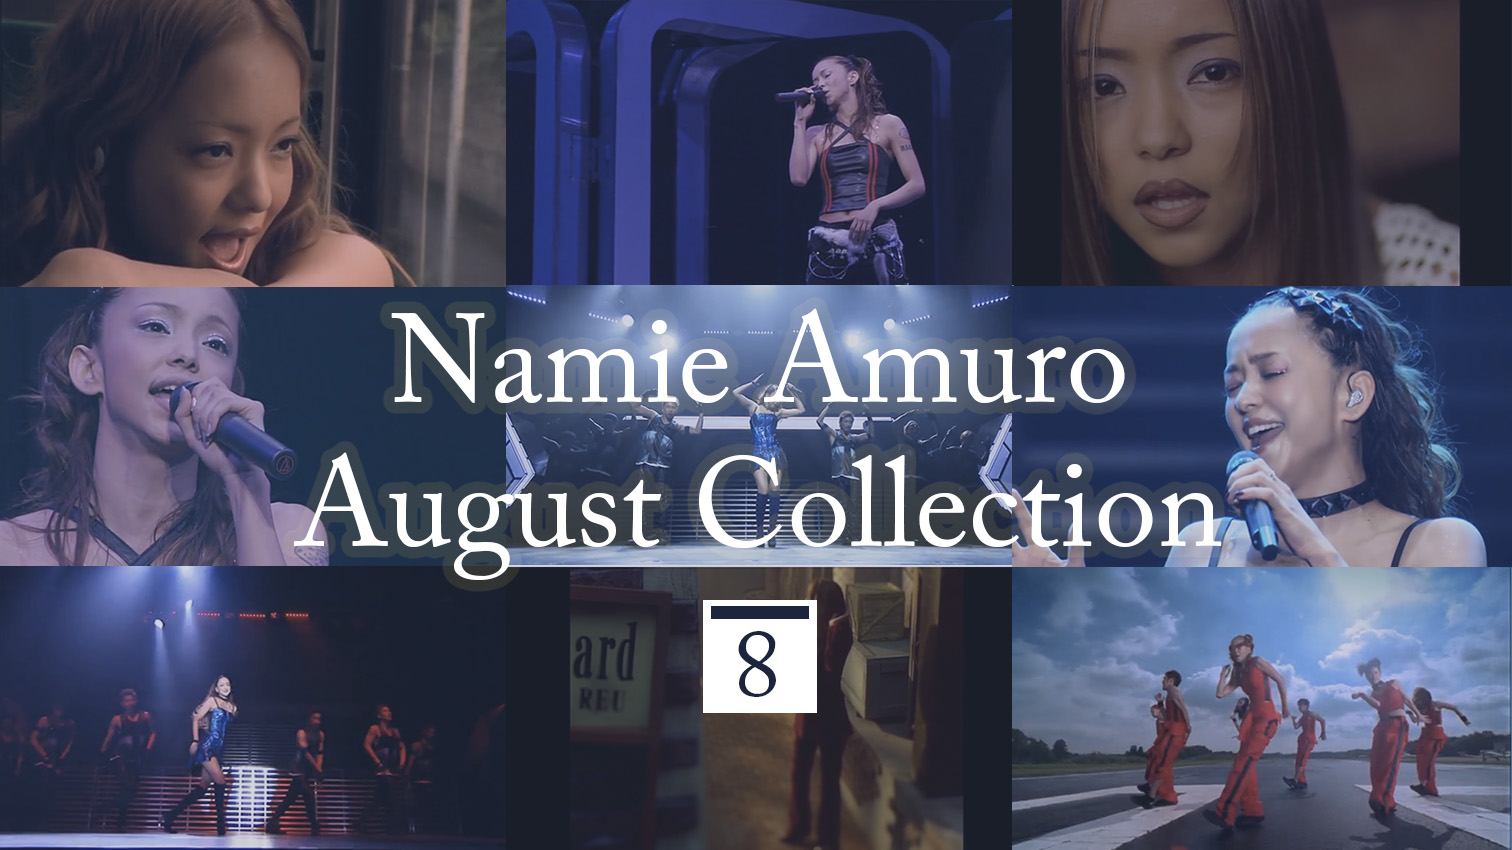 安室奈美恵 ライブdvd ブルーレイの通常盤のジャケットが公開に 裏にはファンへのメッセージが 安室奈美恵ファンサイト Thank You We Love Namie